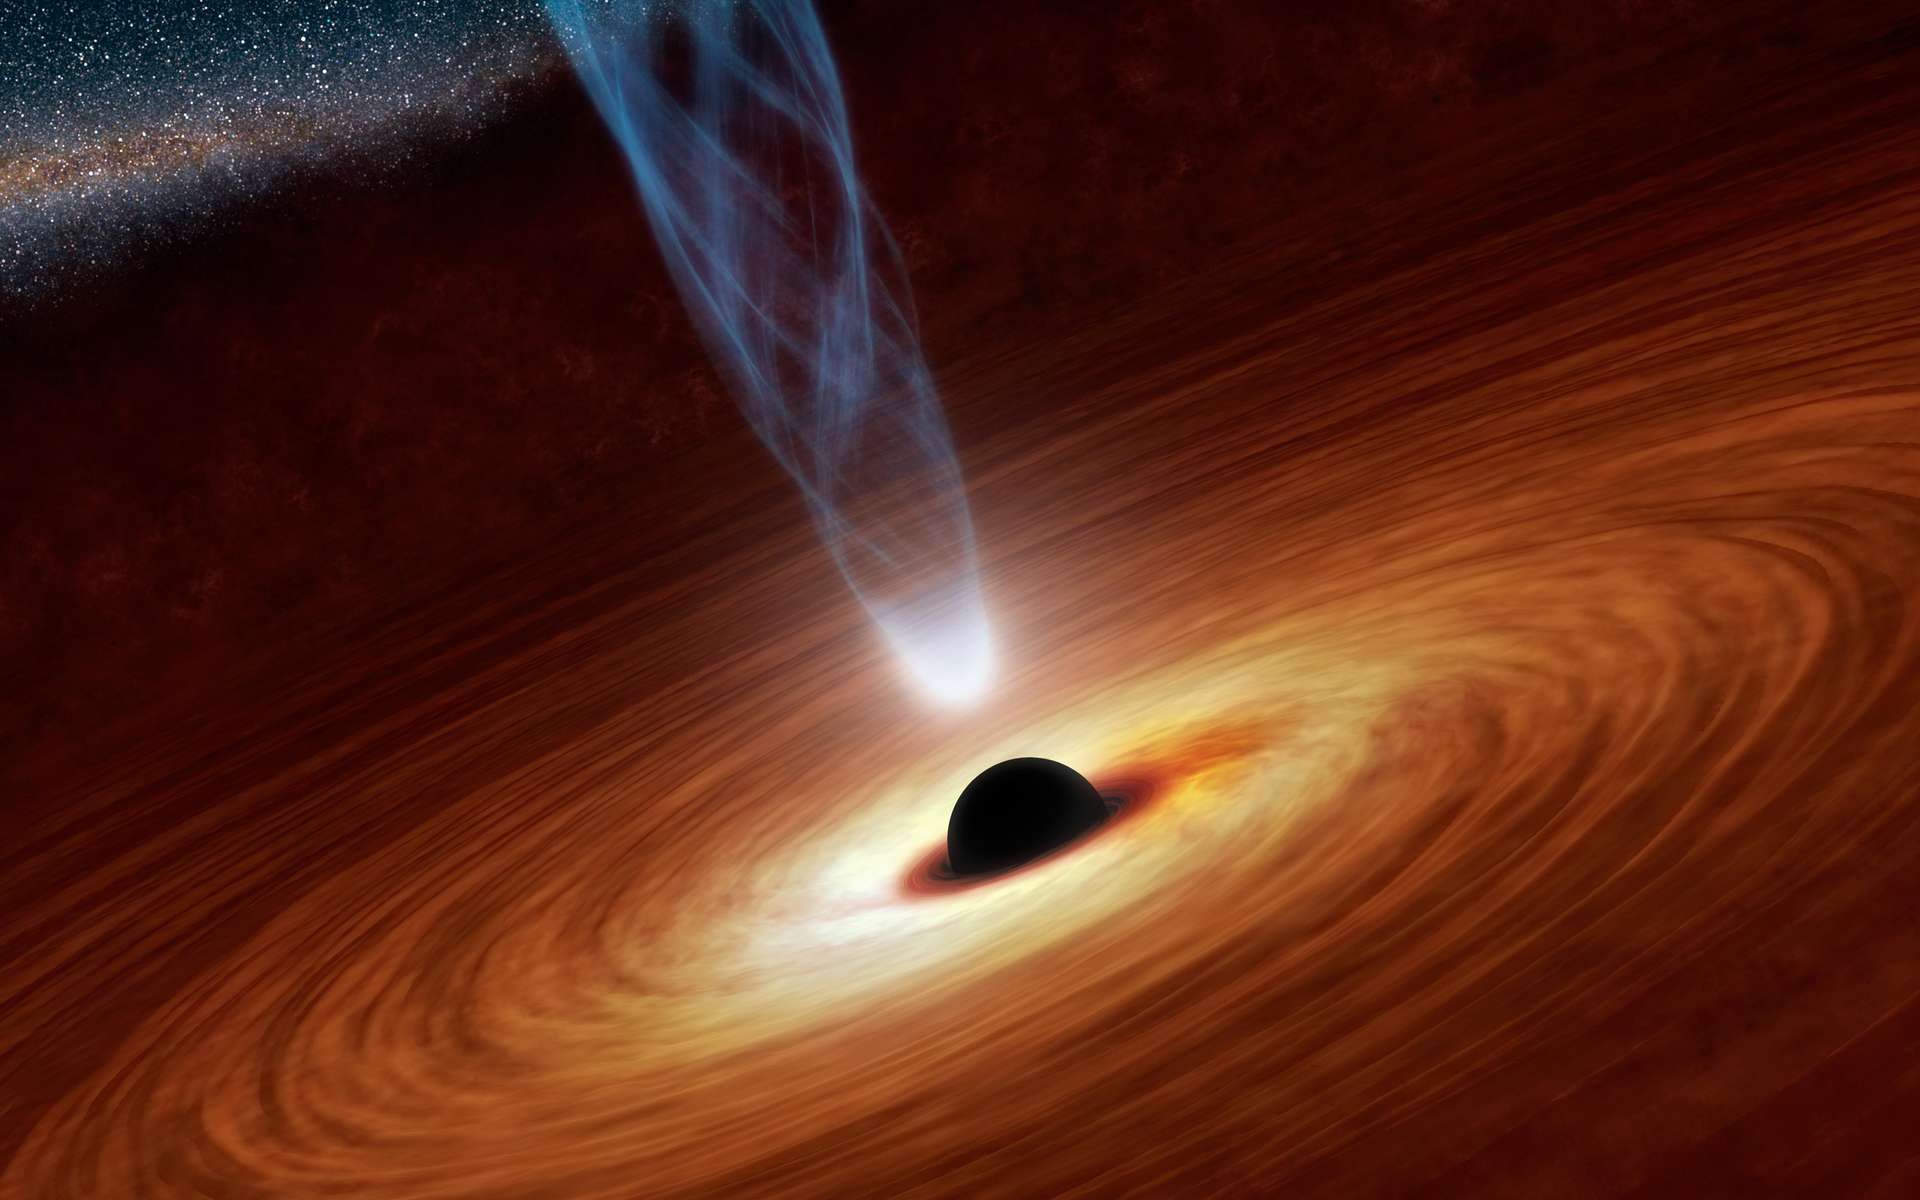 Représentation d'un trou noir avec son disque d'accrétion et un jet d'énergie. © Nasa, Caltech-JPL